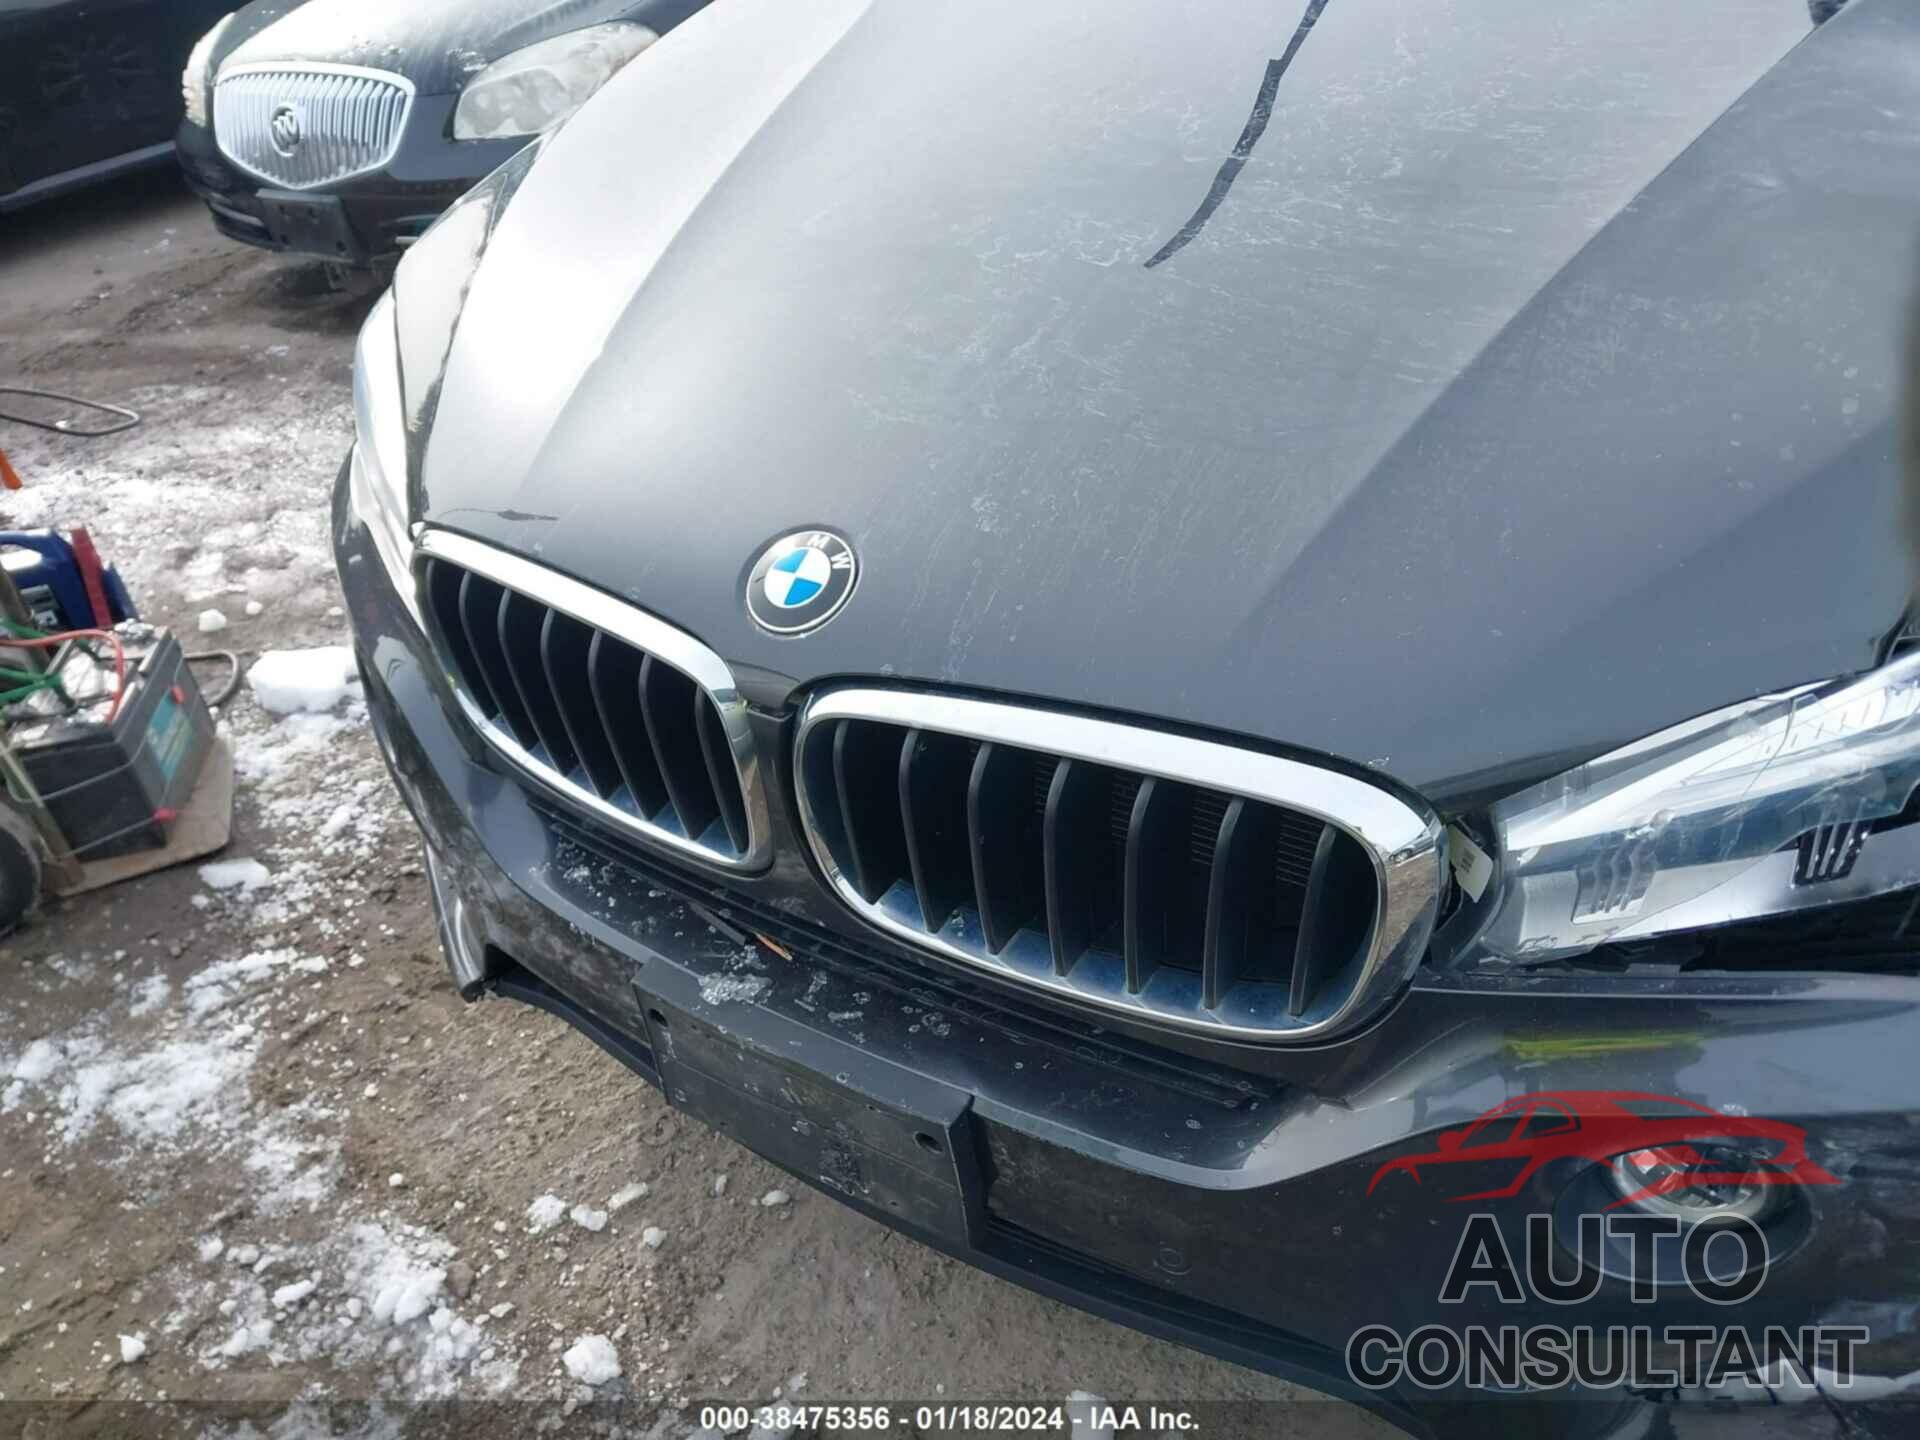 BMW X5 2016 - 5UXKR0C50G0S92800